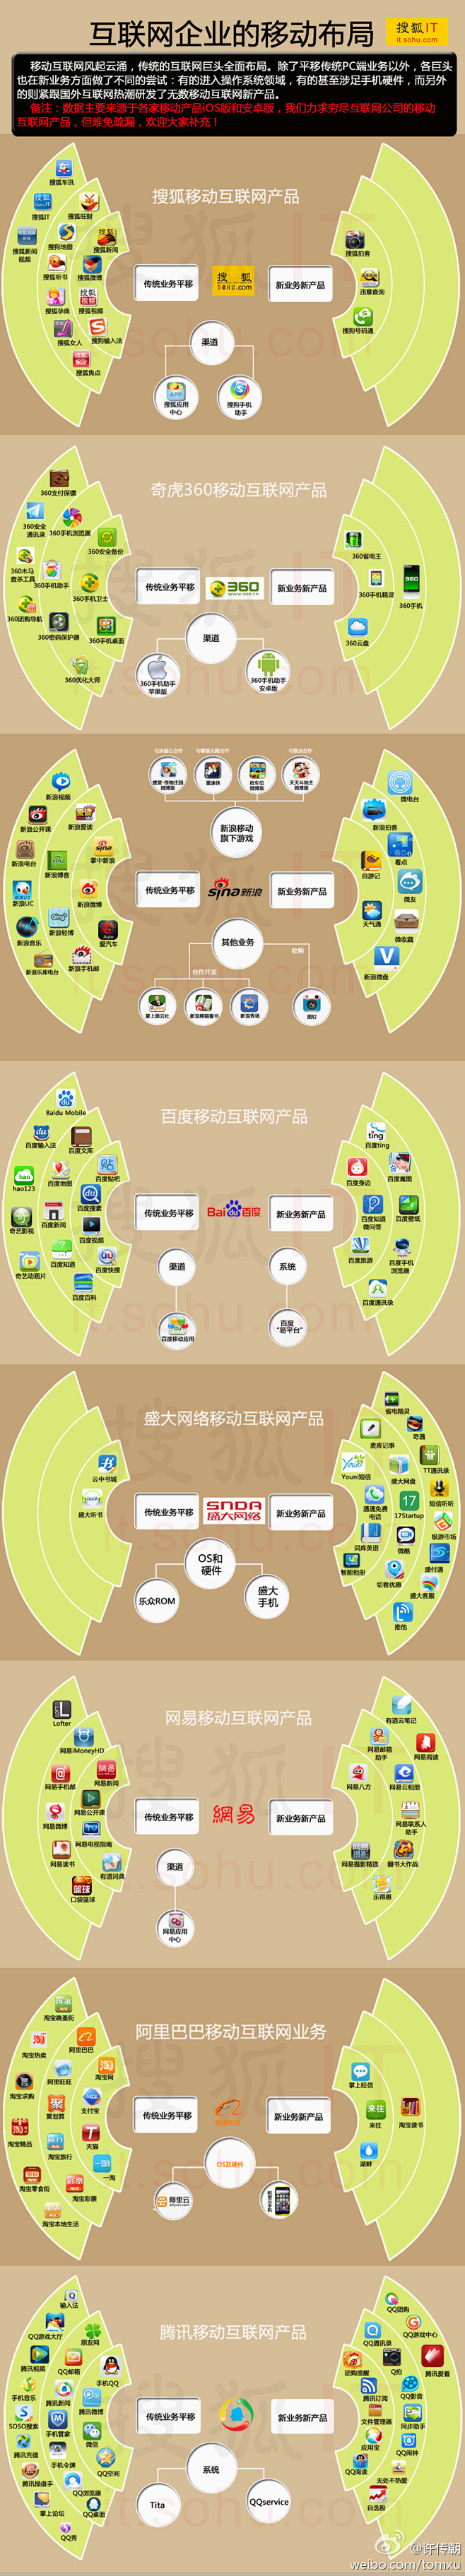 图说中国9大互联网企业的移动业务布局。